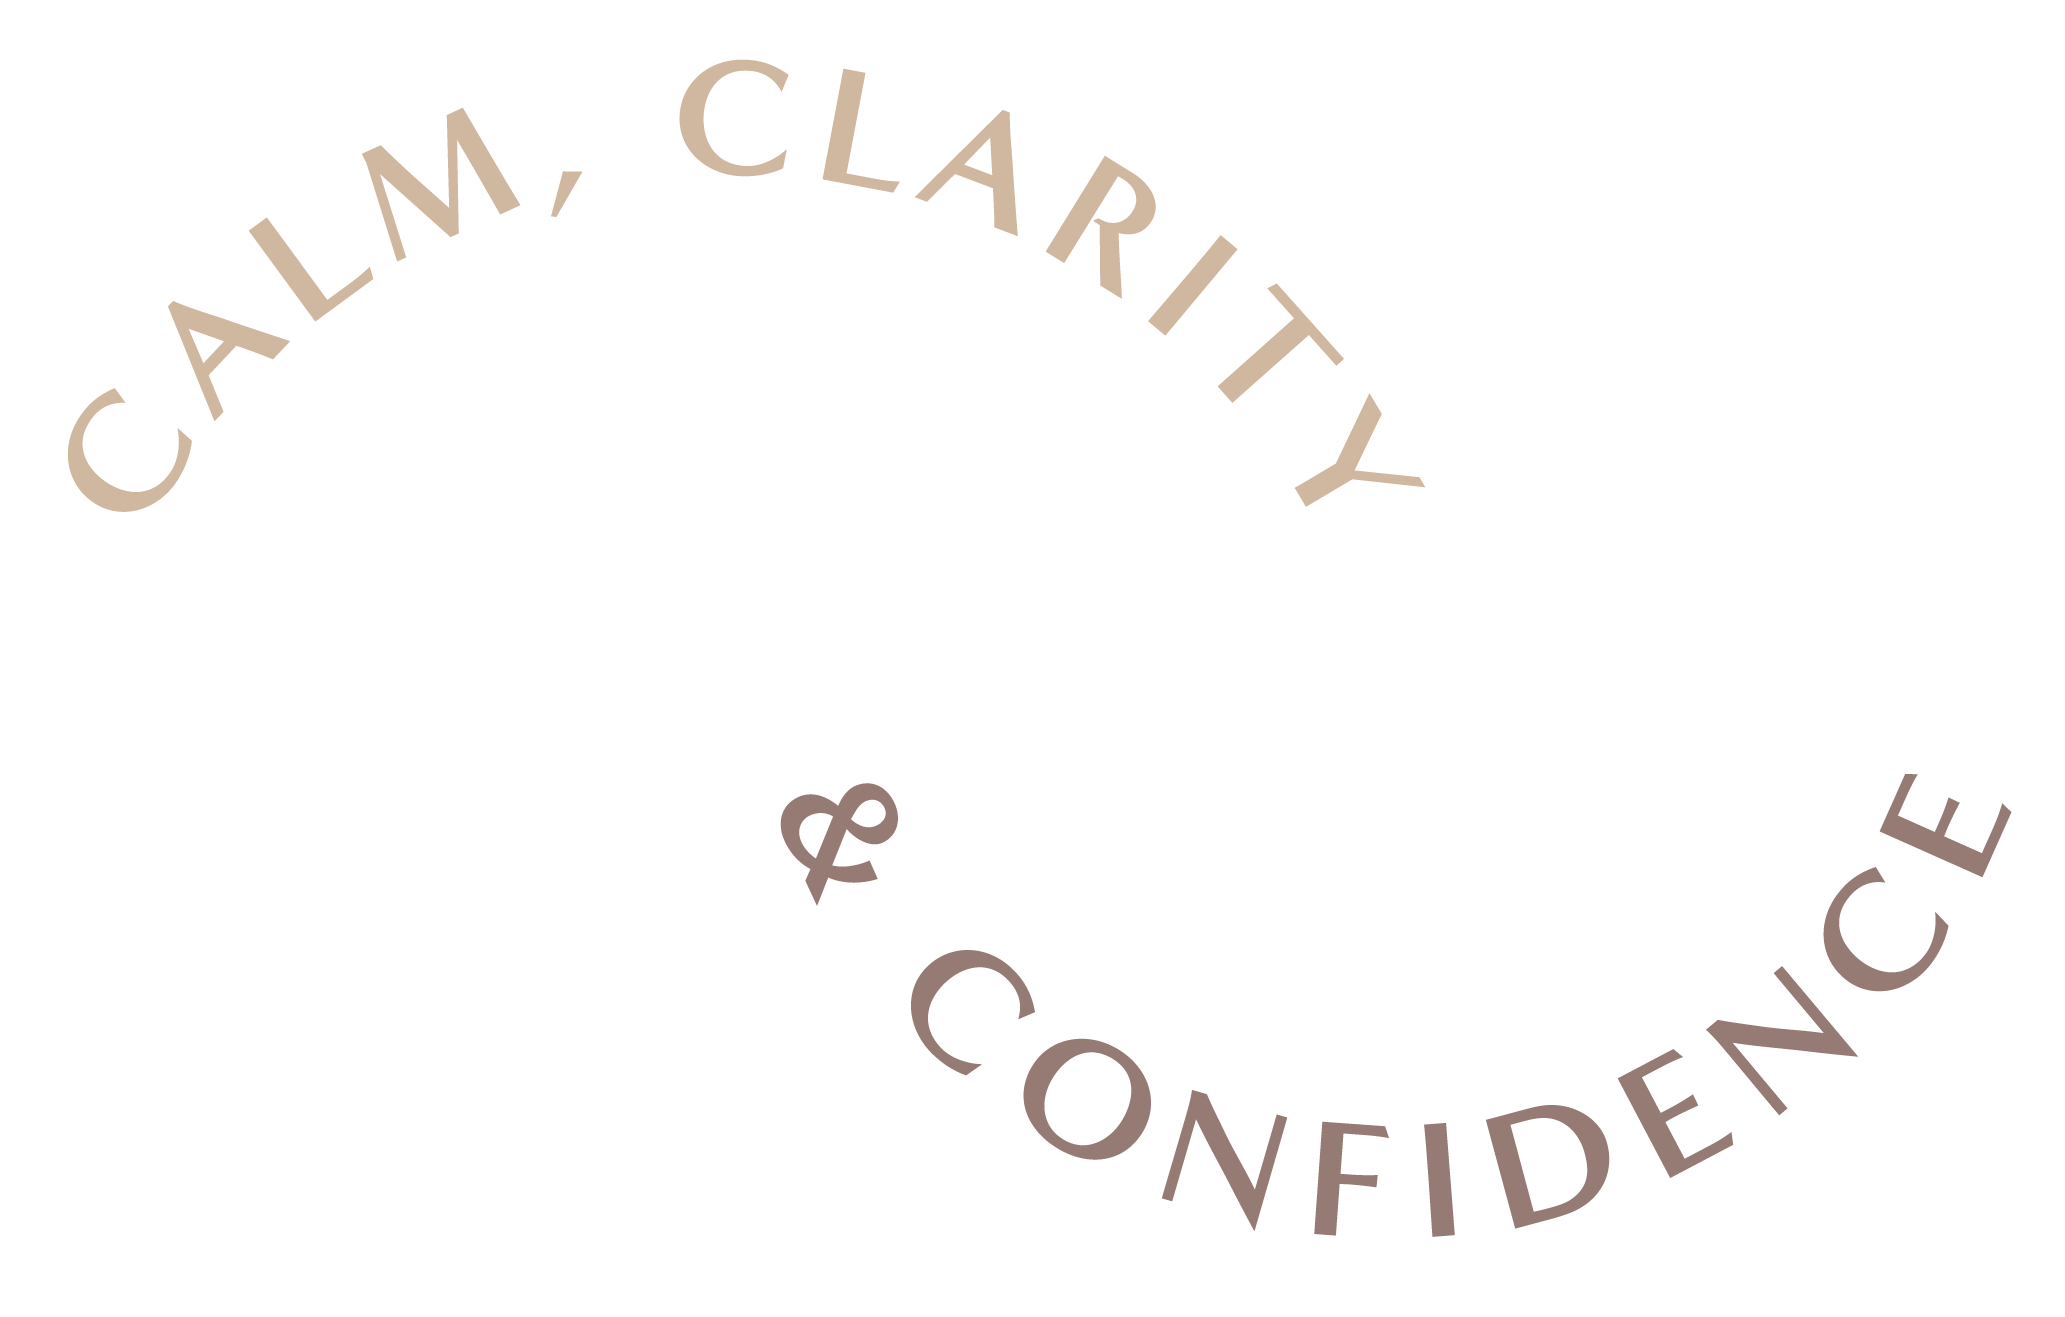 calm-clarity-confidence-gif